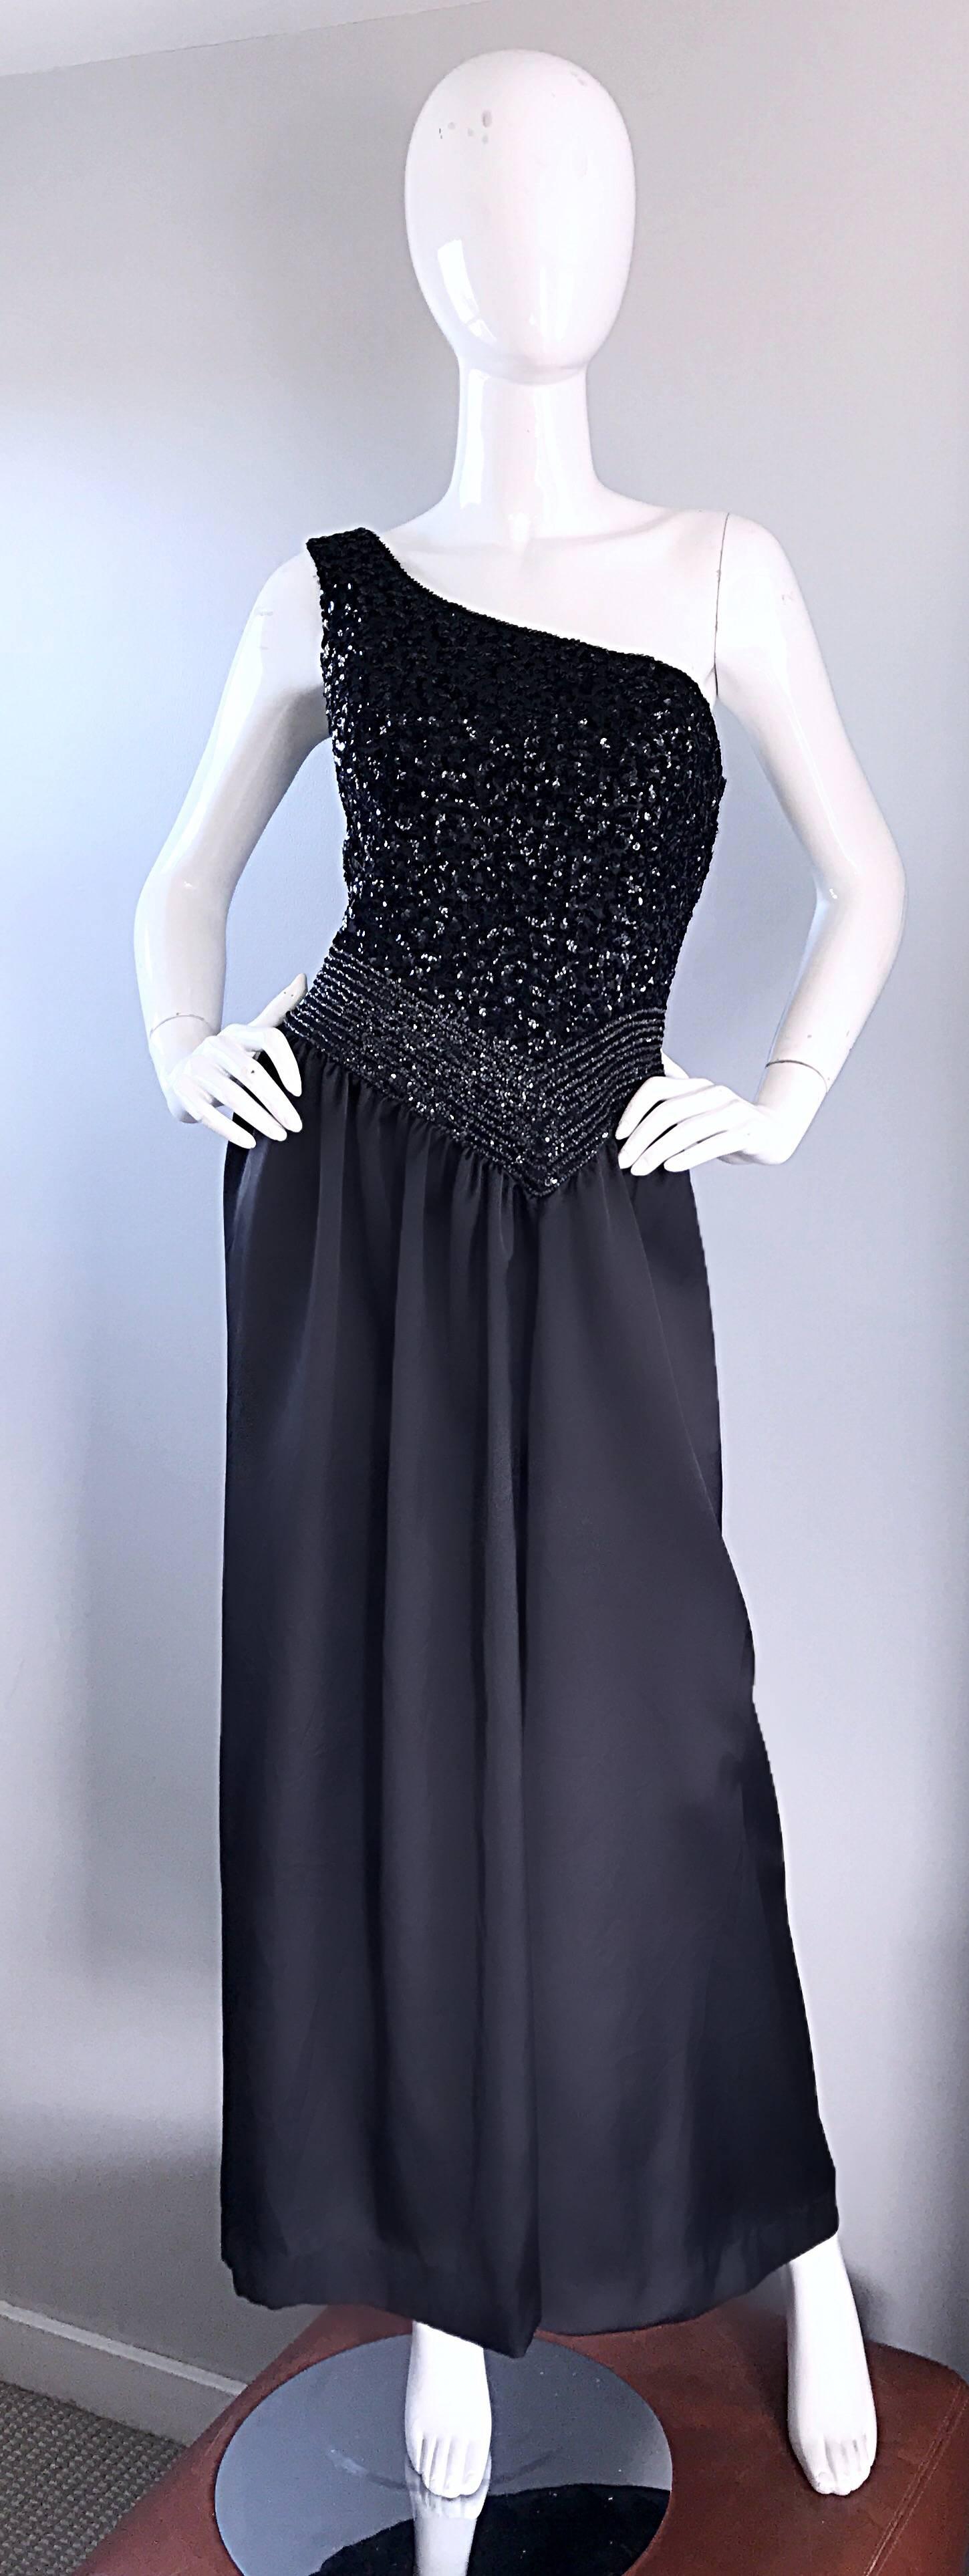 Unglaublich Vintage 1970s eine Schulter schwarz Pailletten Seide griechischen inspiriert Toga Abendkleid! Mit tausenden von handgenähten Pailletten und Perlen auf dem gesamten Mieder. Weicher schwarzer Seidenrock fließt mit Bewegung. Durchgehender